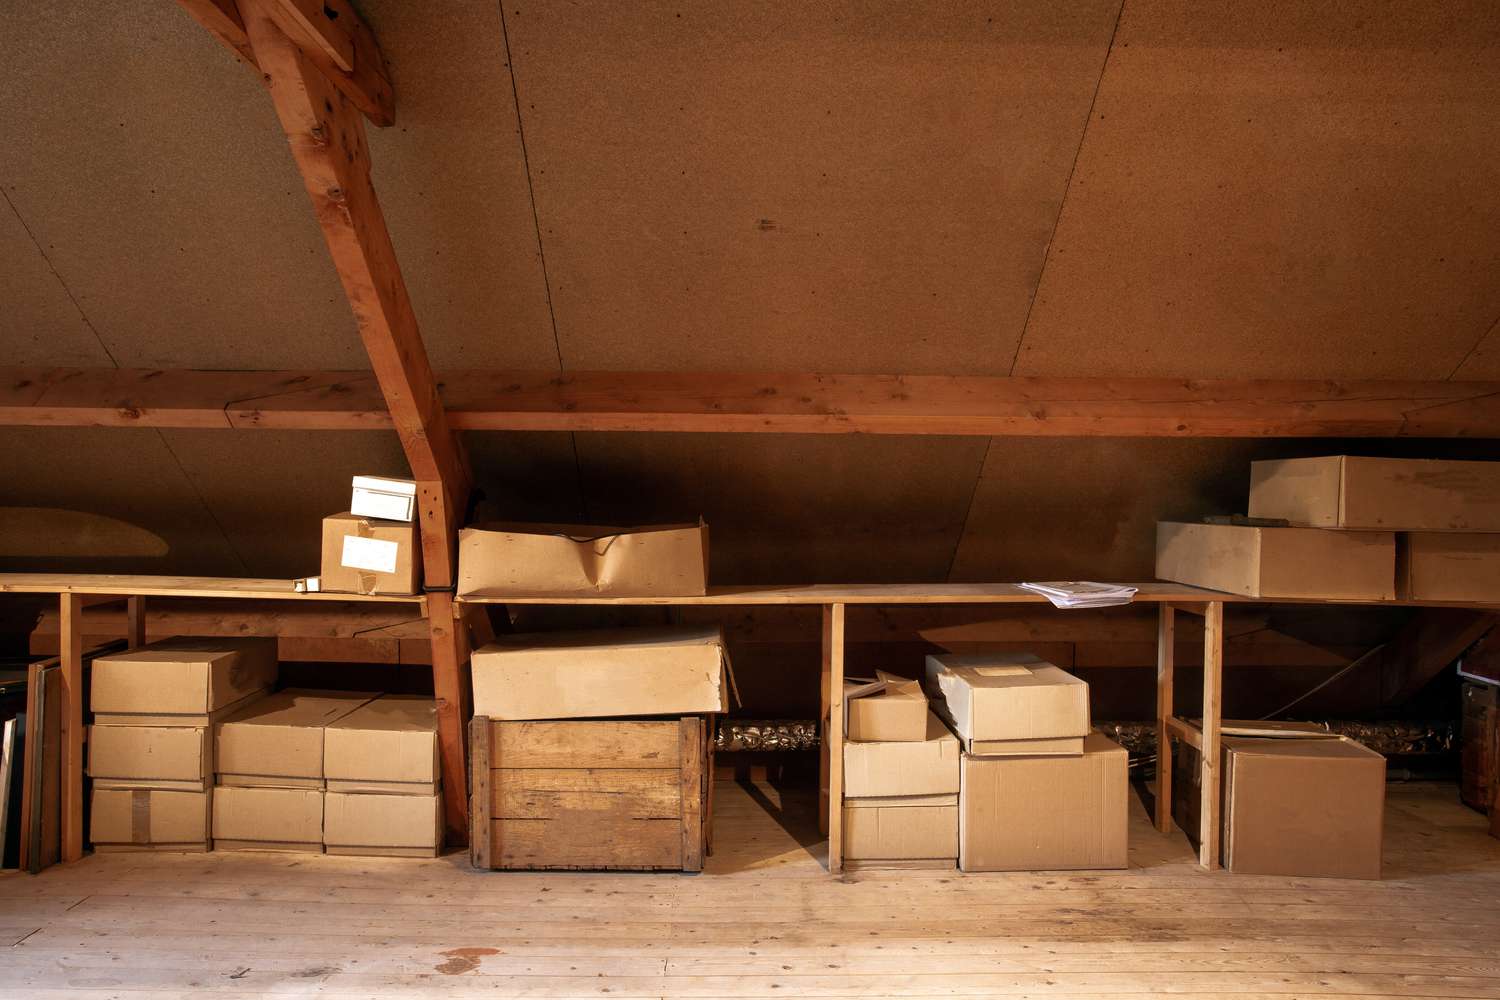 Einbauregale auf dem Dachboden mit Kisten drum herum